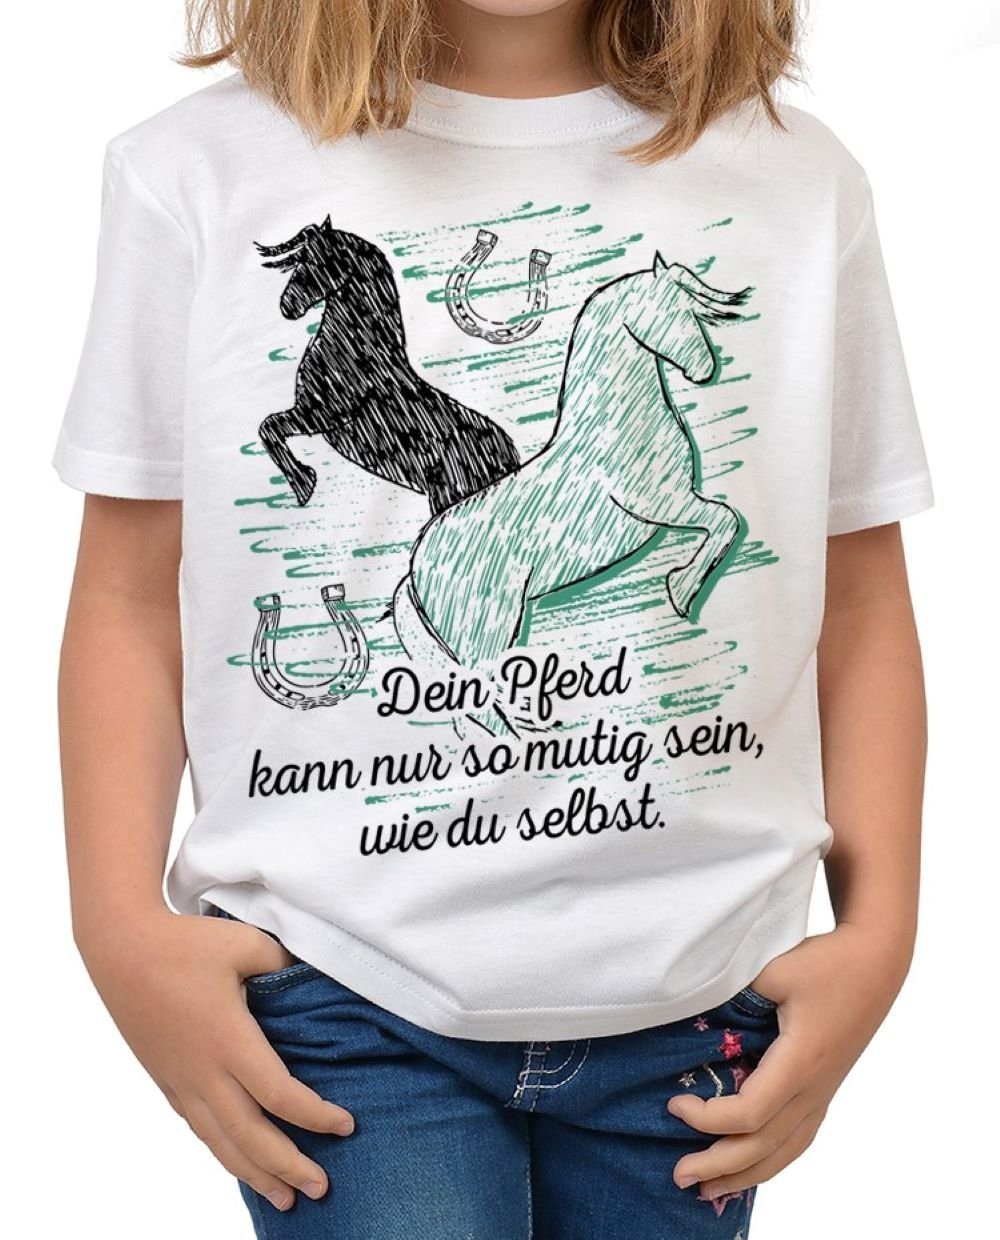 Tini - Shirts T-Shirt »Kinder Pferde Sprüche Shirt« Pferde Sprüche Motiv  Shirt Kindershirt : Dein Pferd kann nur so mutig sein, wie du selbst online  kaufen | OTTO